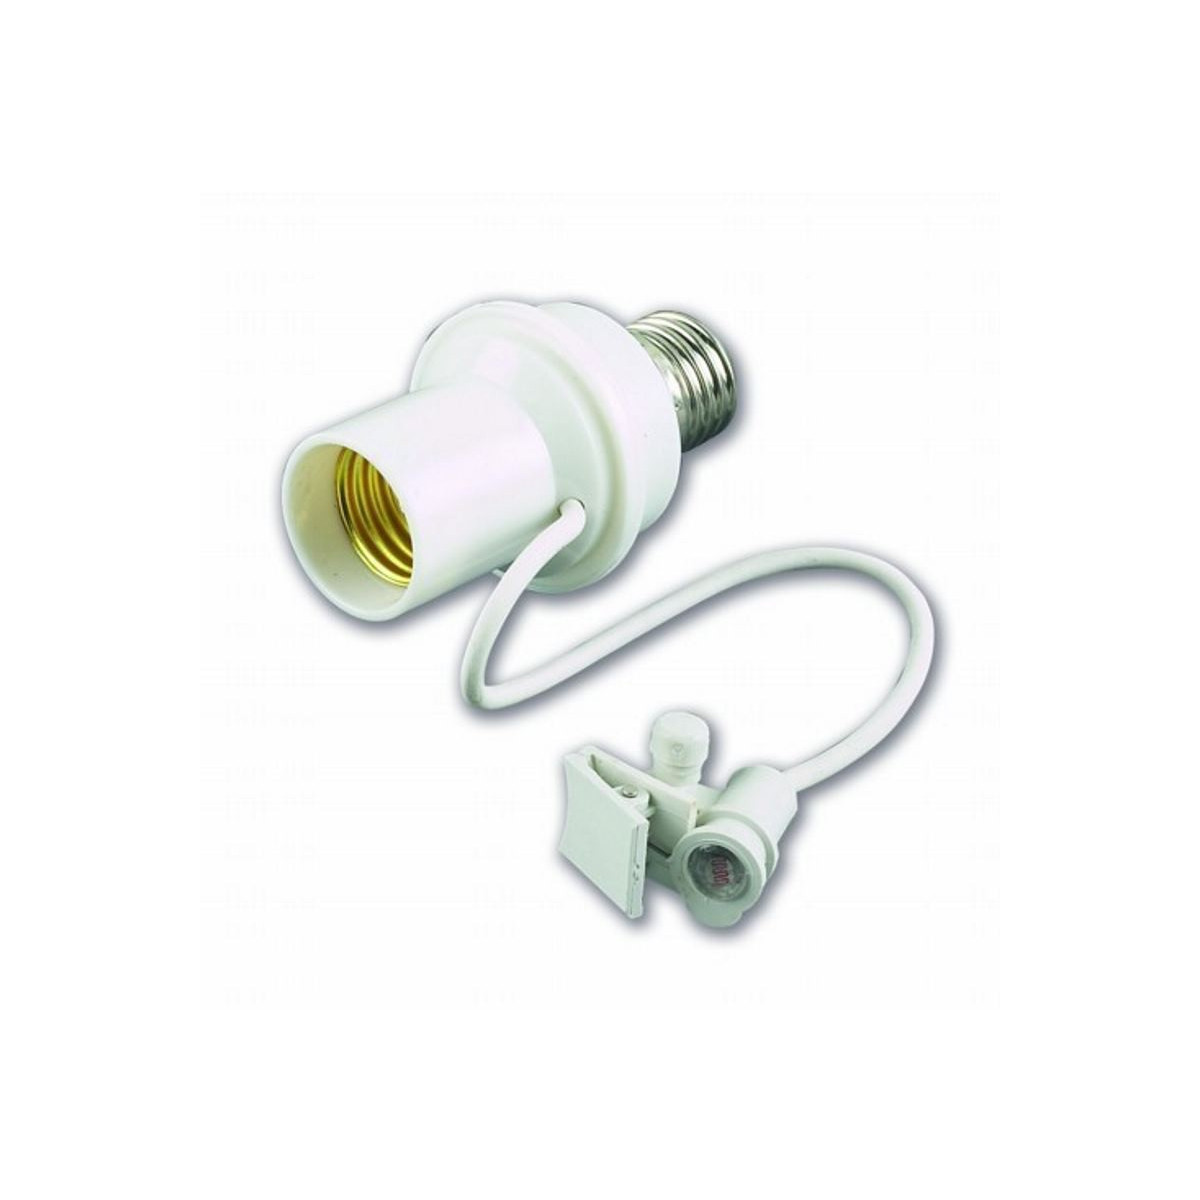 Dämmerungsschalter für E27-Lampe mit Kabelsensor